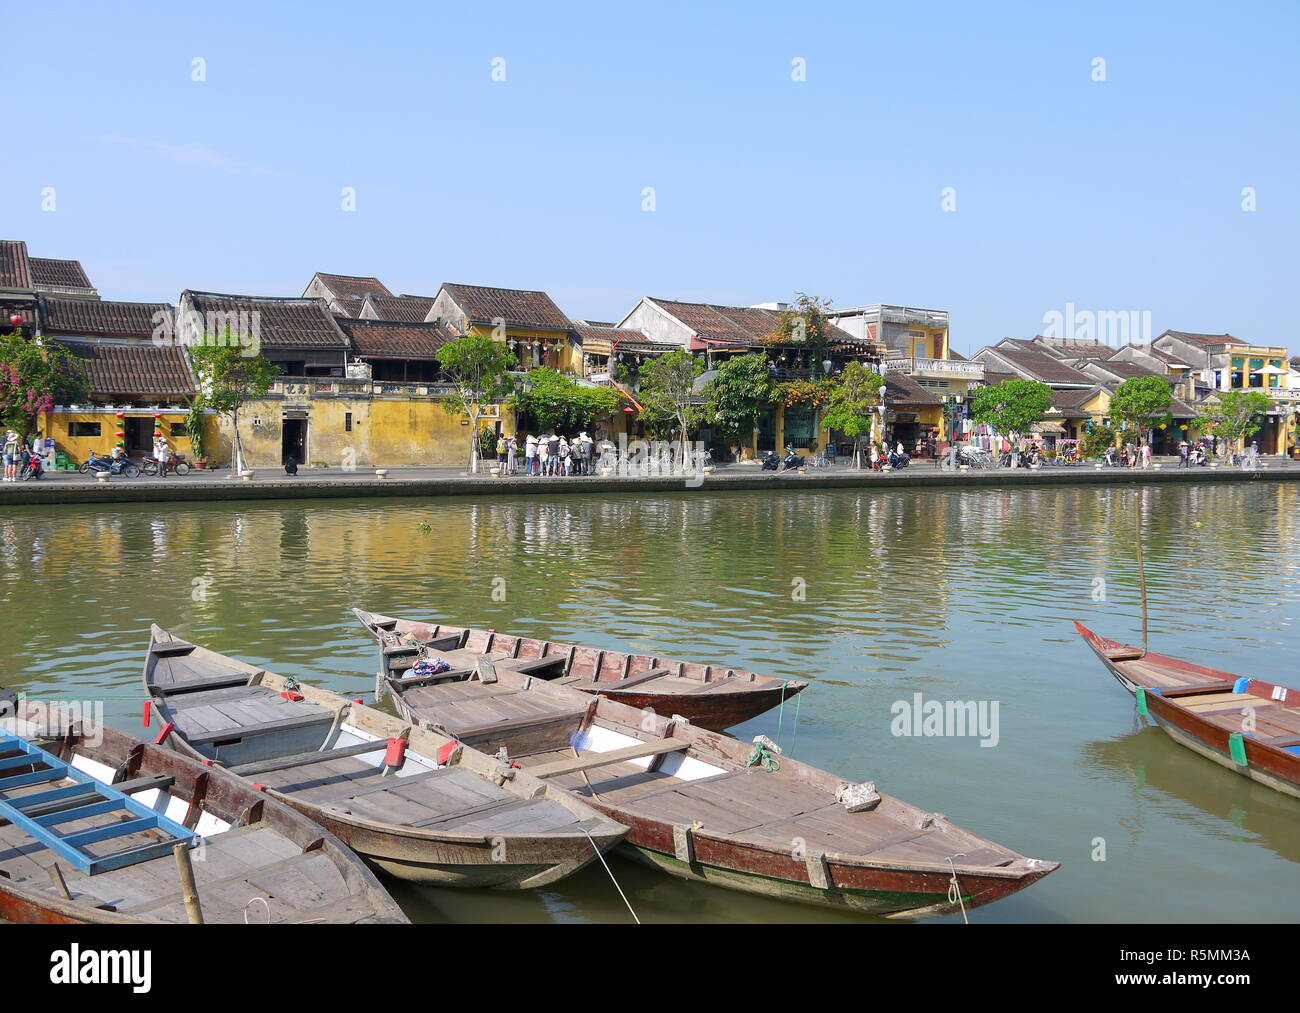 HOI AN (Vietnam), VIETNAM - 19 mars 2018 : rivière occupé dans l'ancienne ville de Hoi An avec vue sur les bateaux traditionnels, les maisons et les touristes jaune Banque D'Images